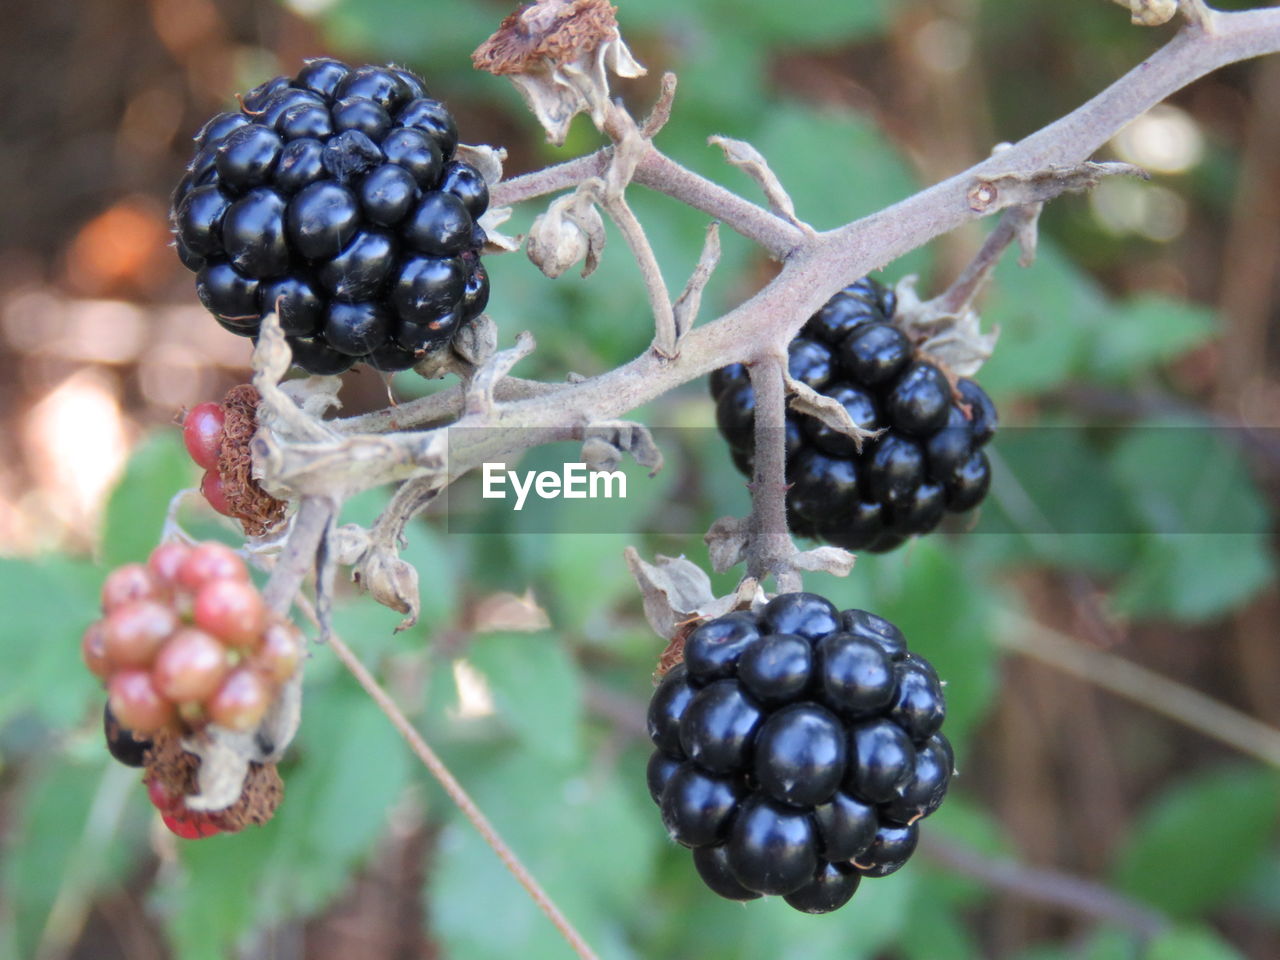 Close-up of blackberries growing in garden